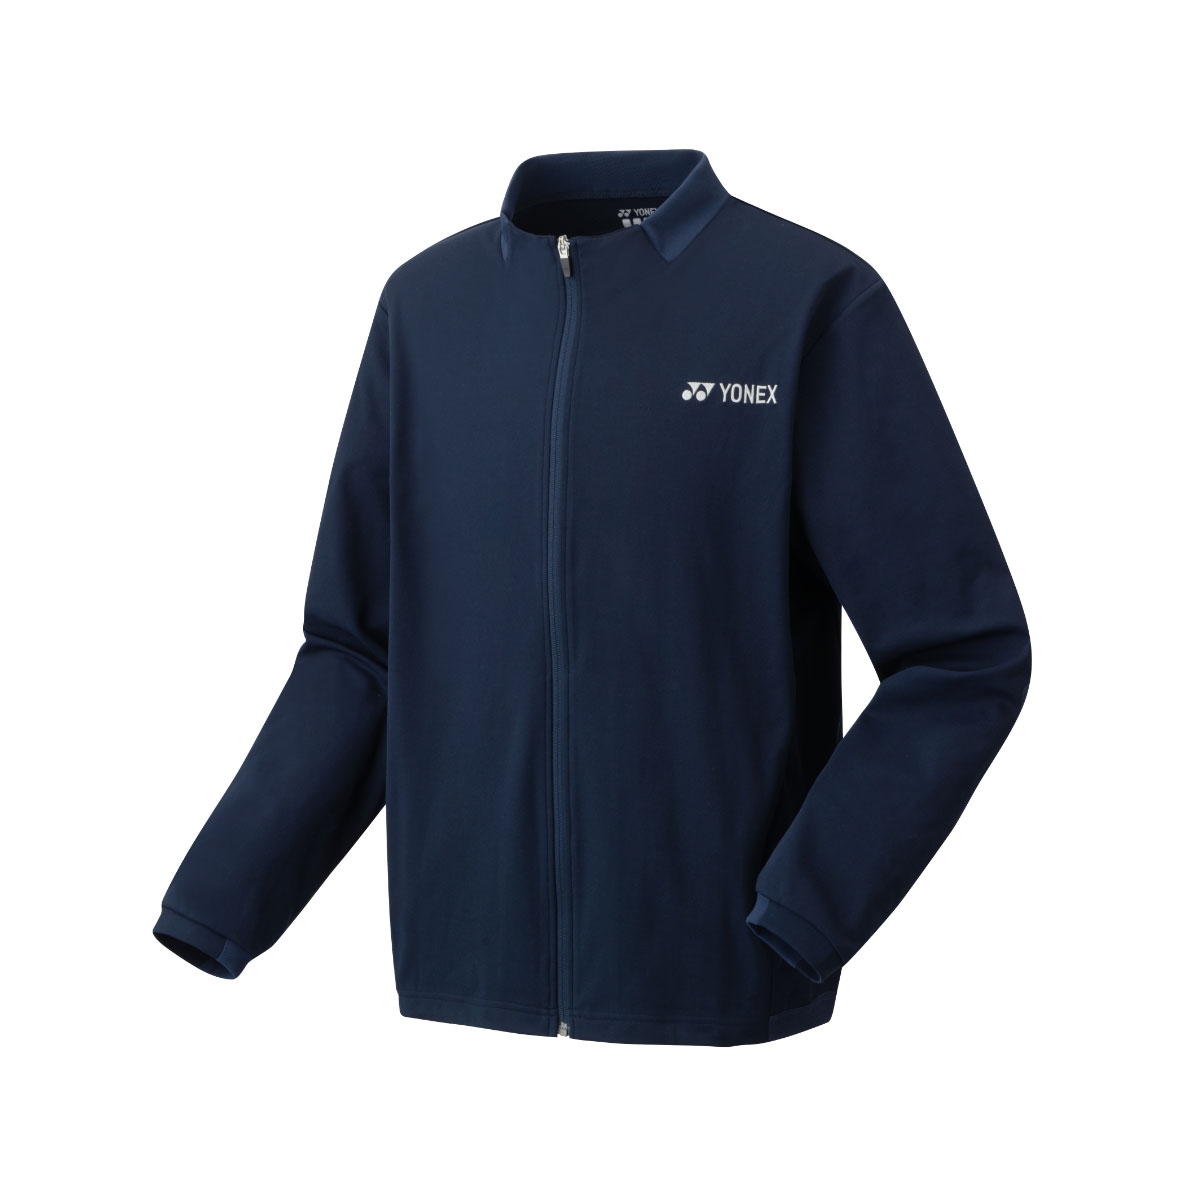 YONEX Men's Warm-Up Jacket (50111) - Navy Blau - S